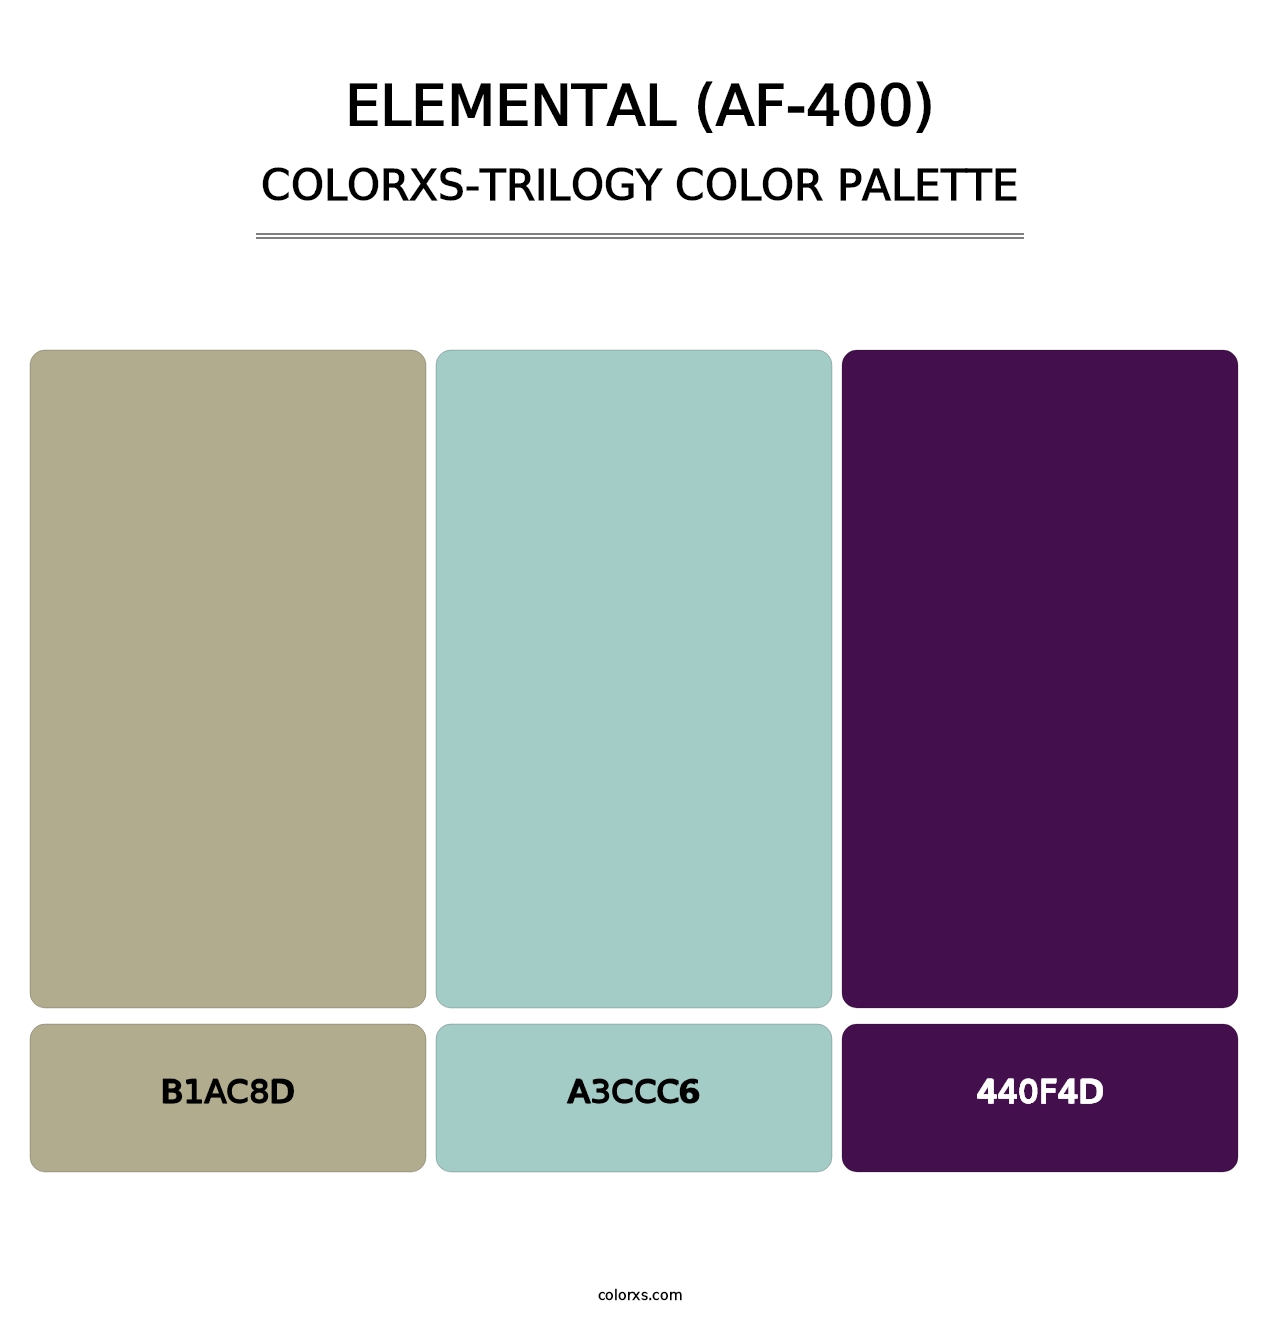 Elemental (AF-400) - Colorxs Trilogy Palette